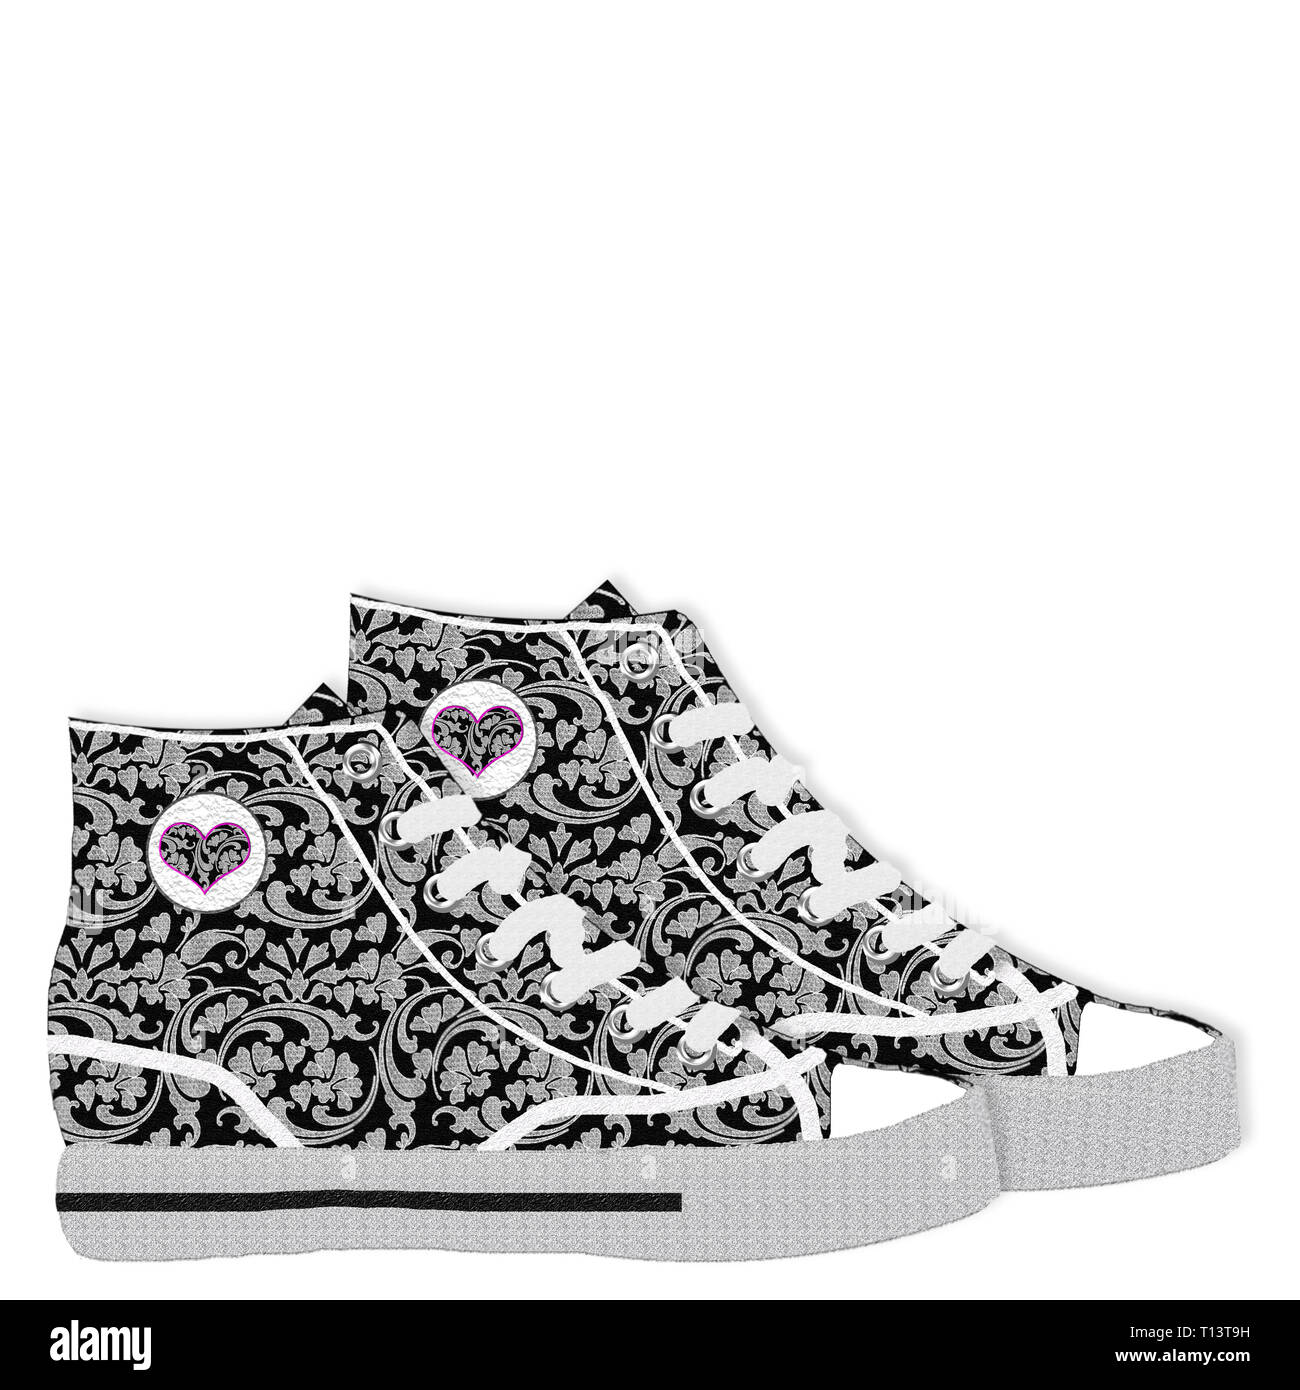 Coppia di designer grafico Sneakers con nero/grigio/bianco/Swirl disegni floreali. Isolato su sfondo bianco, una immagine ha contorno grigio Foto Stock